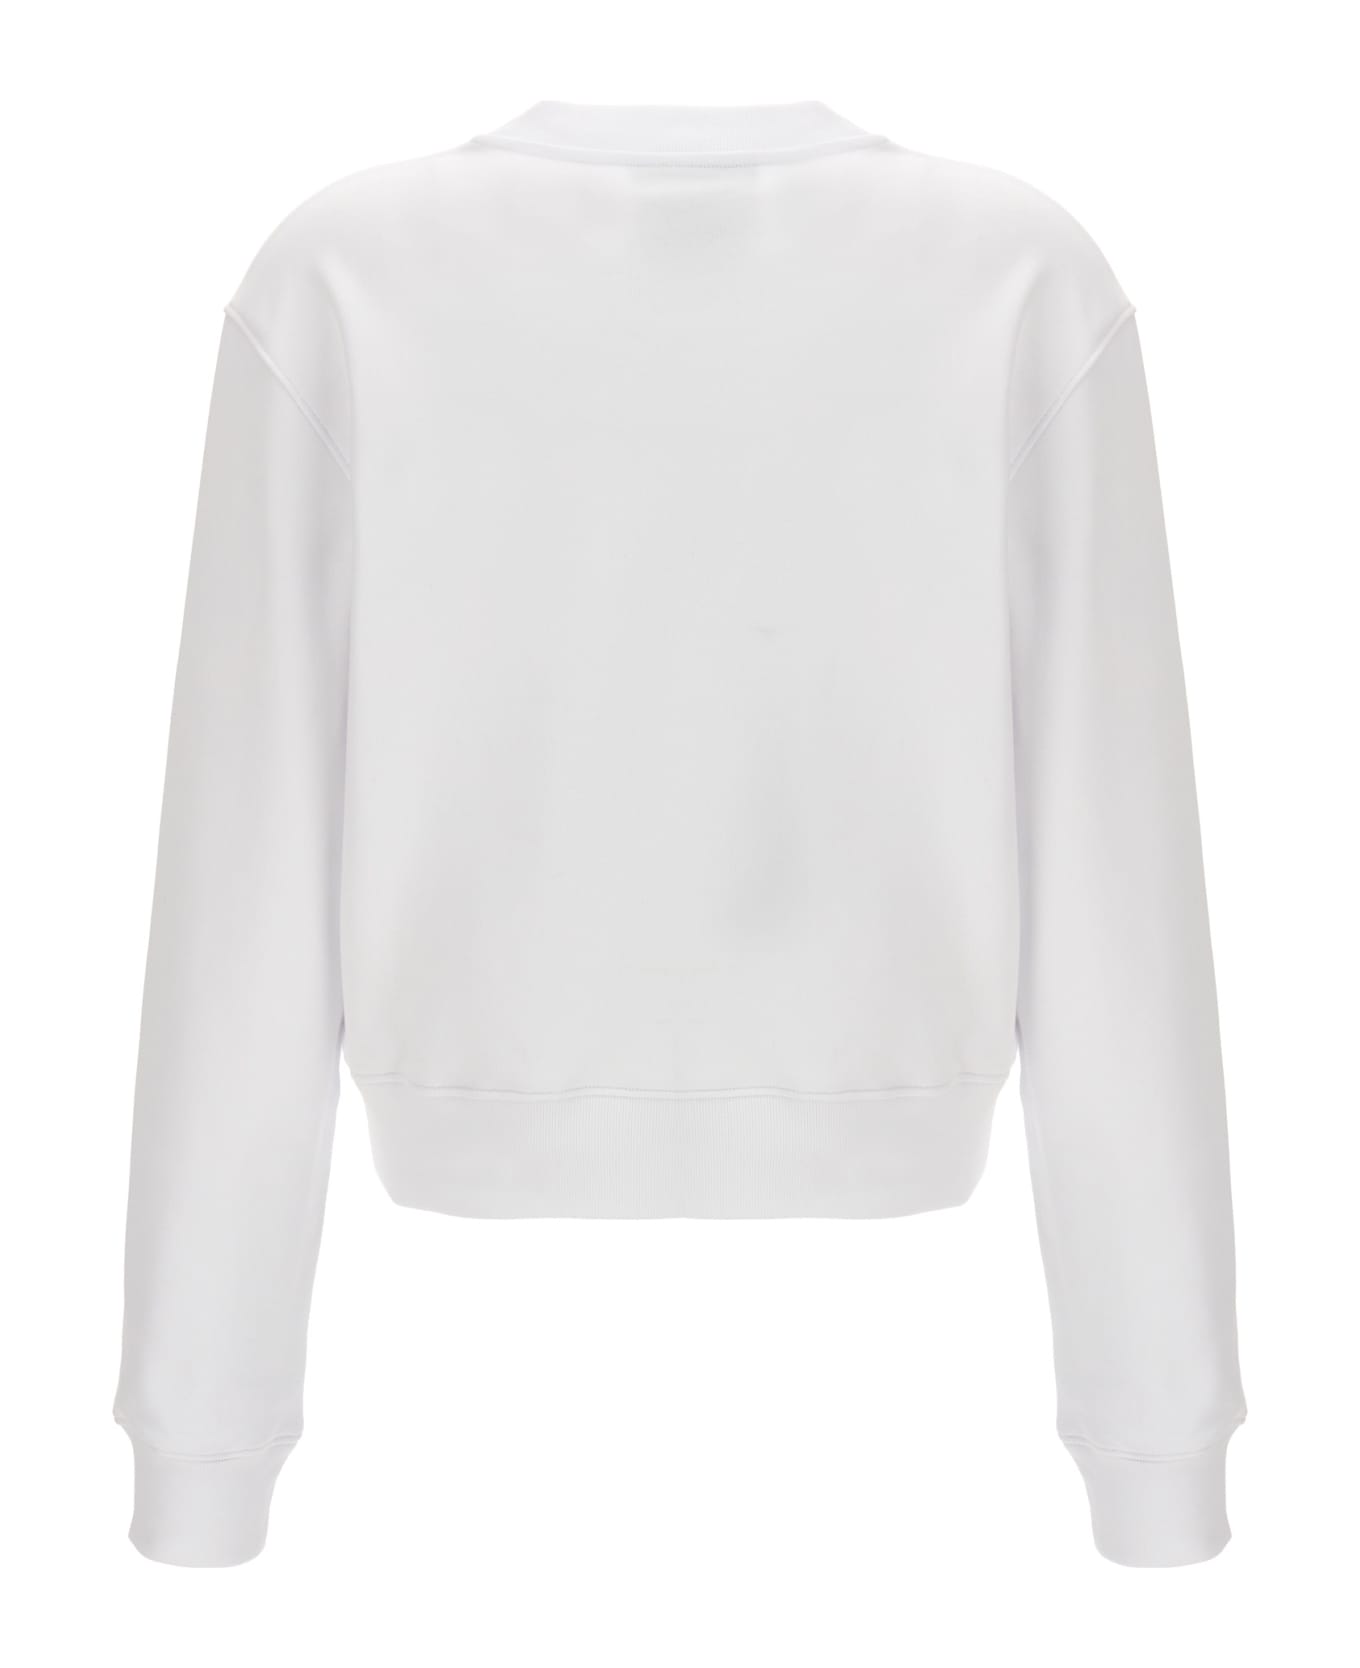 Moschino '40 Years Of Love' Sweatshirt - White フリース